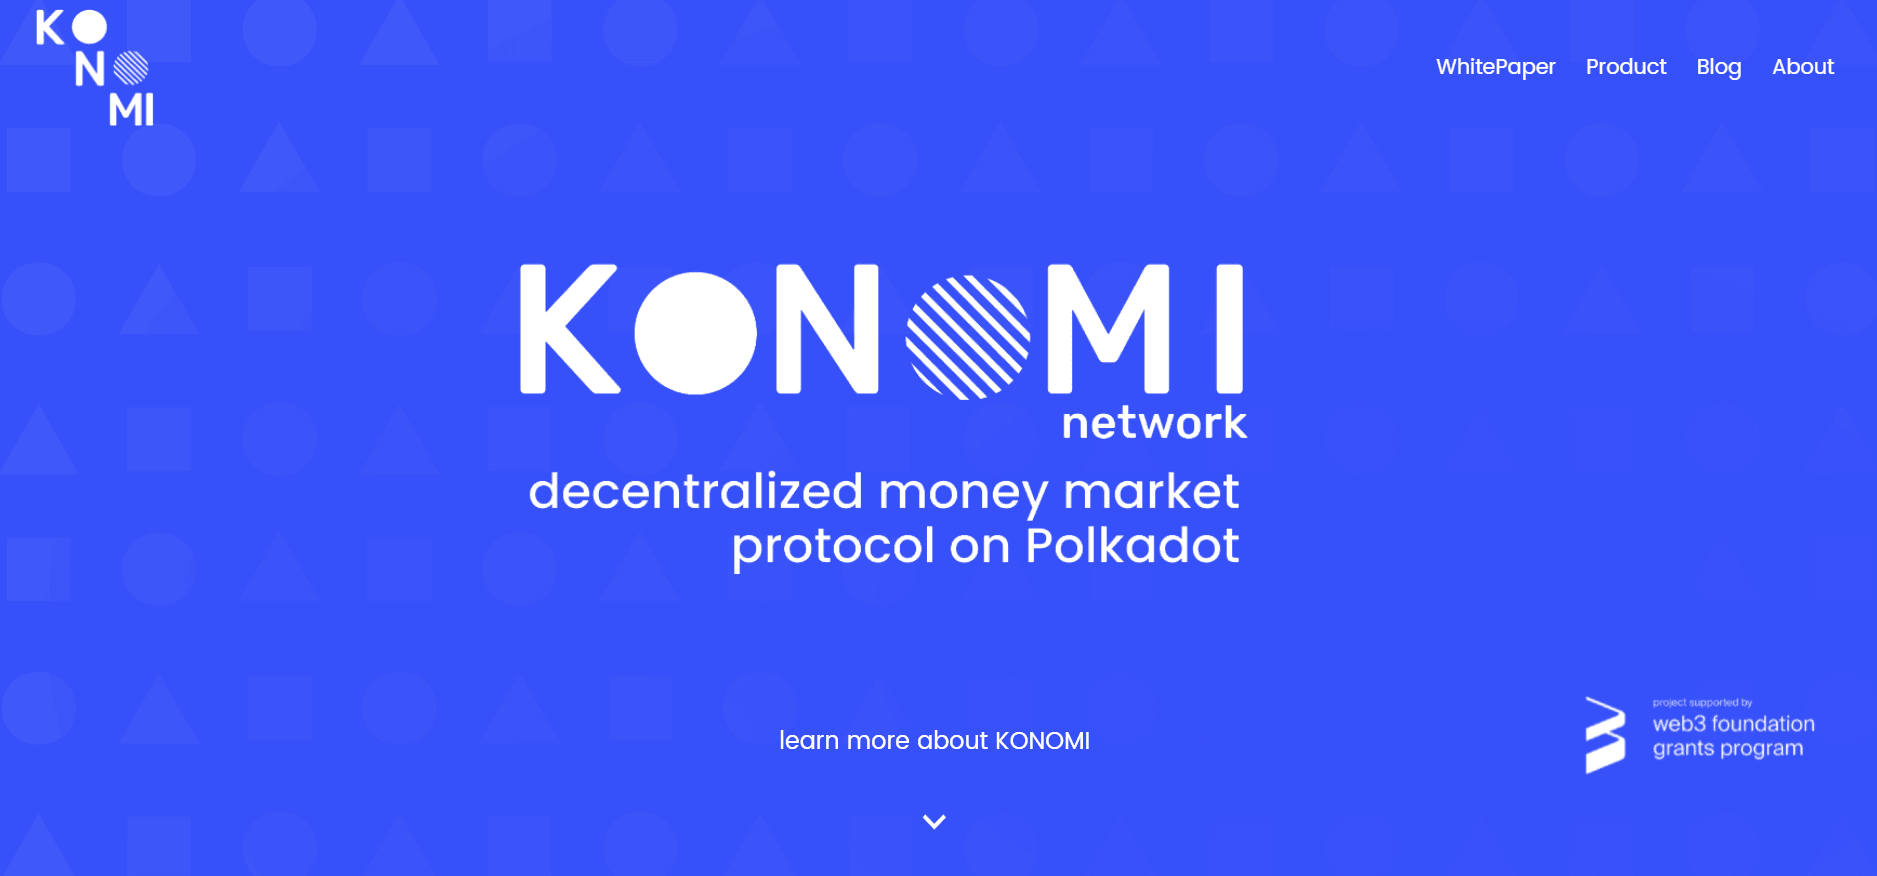 website of konomi network